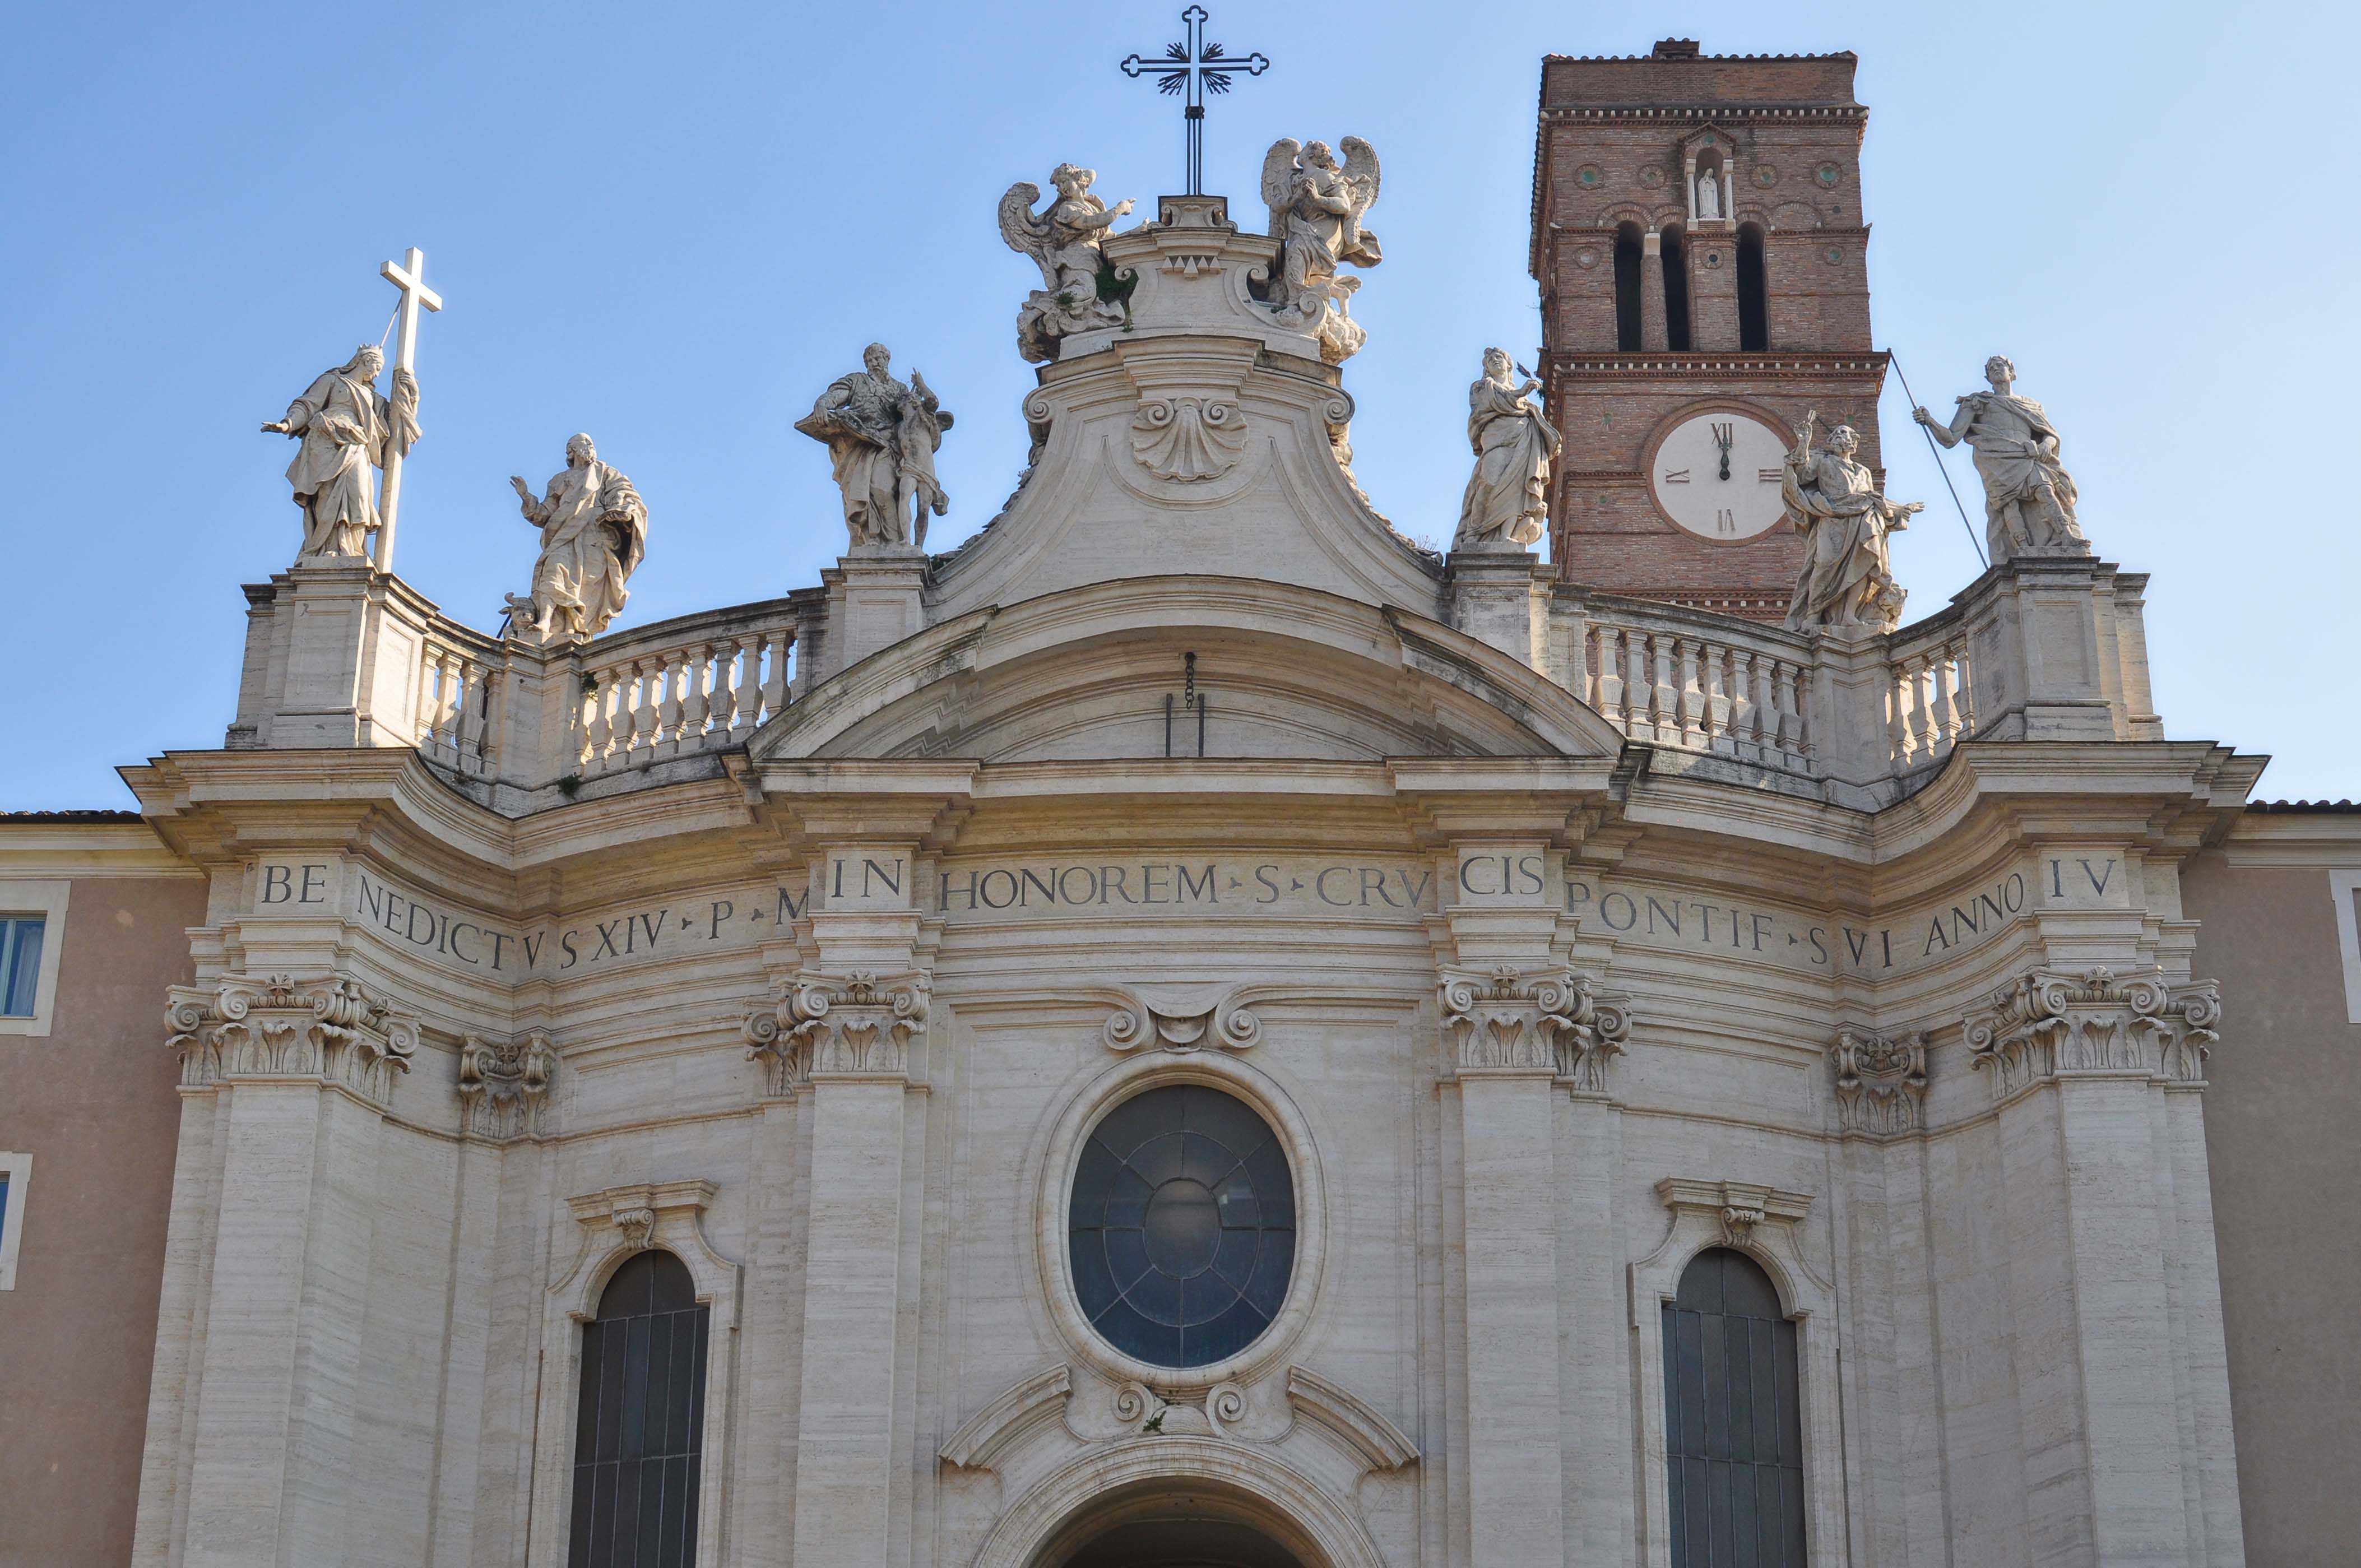 Santa Croce in Gerusalemme, Rome: All Year